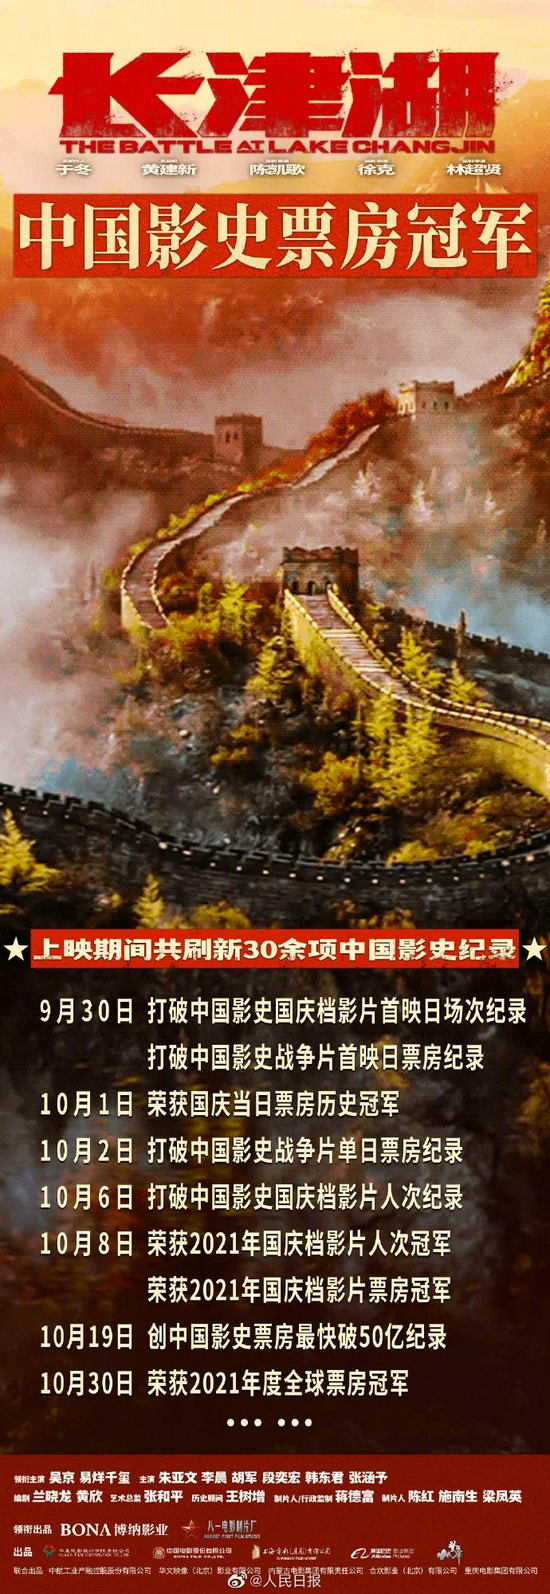 长津湖刷新30余项中国影史纪录 吴京恭喜吴京!